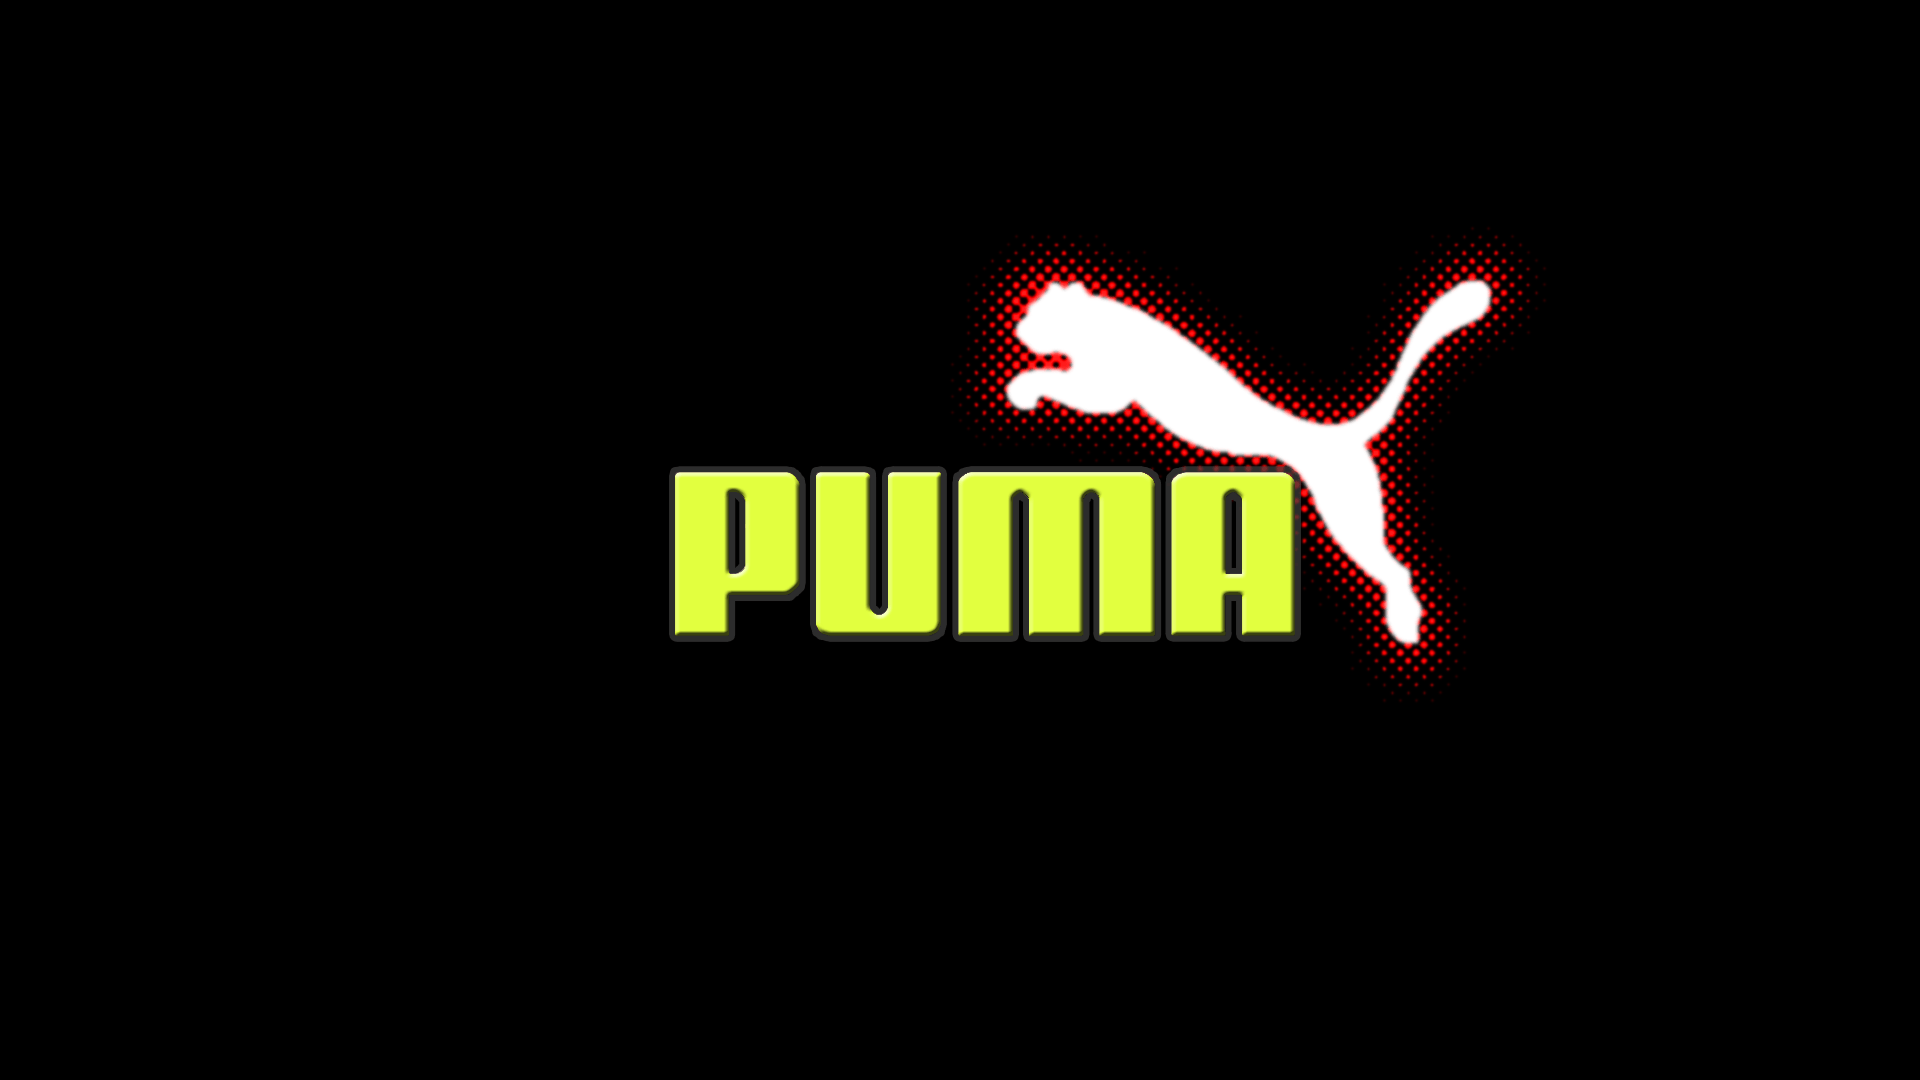 logo puma wallpaper